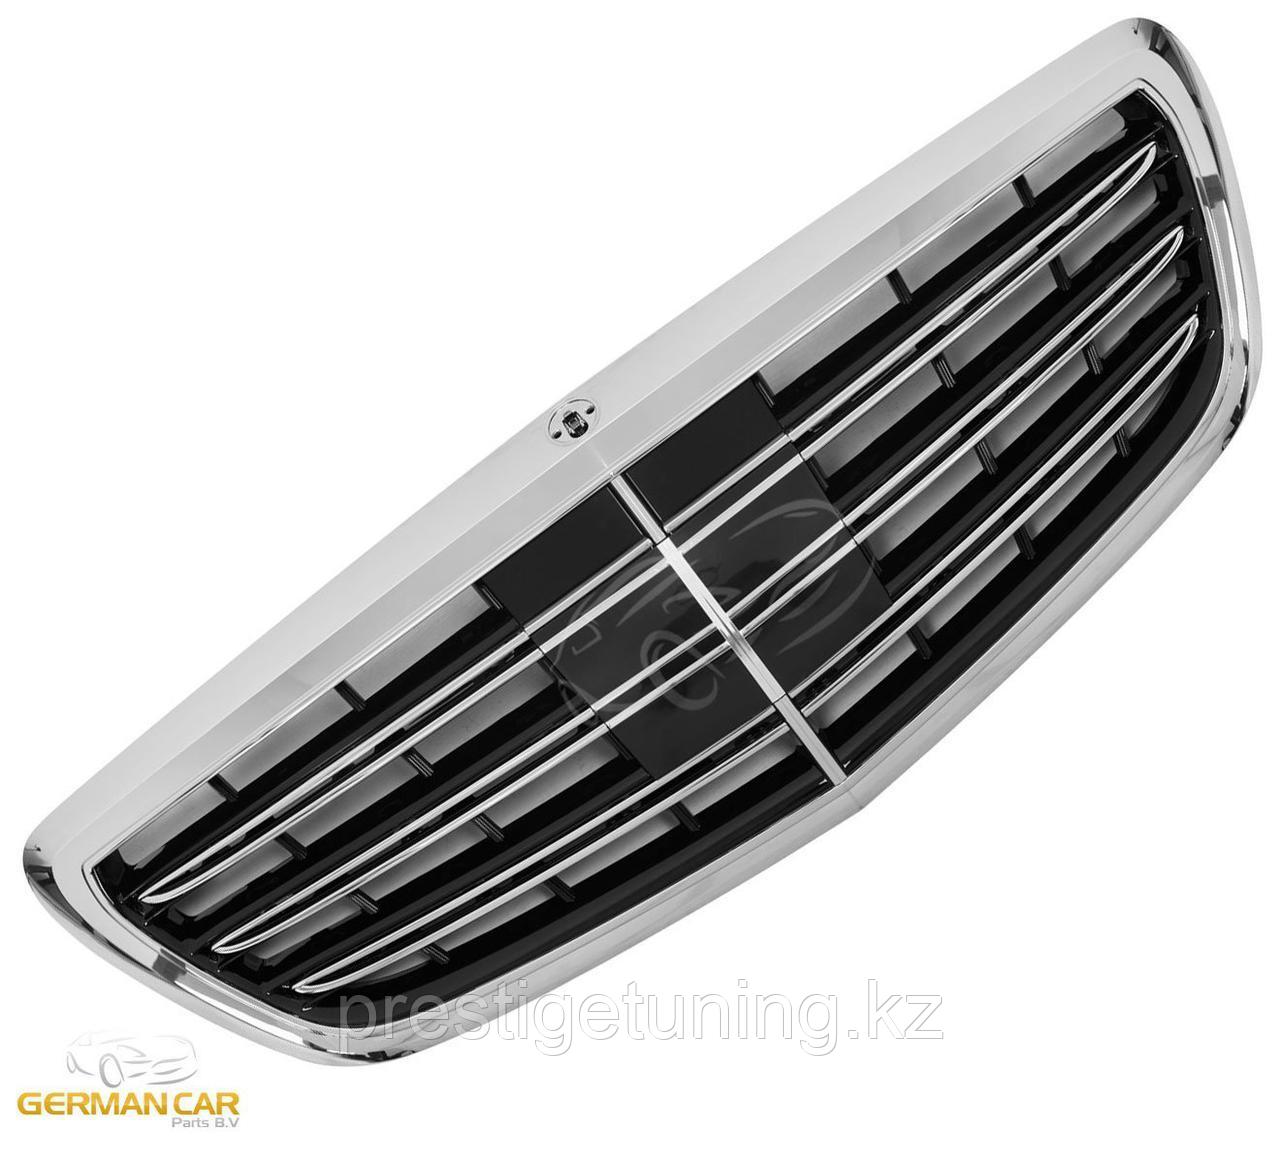 Решетка радиатора на Mercedes W222 2013-17 стиль AMG (черный с хромом)